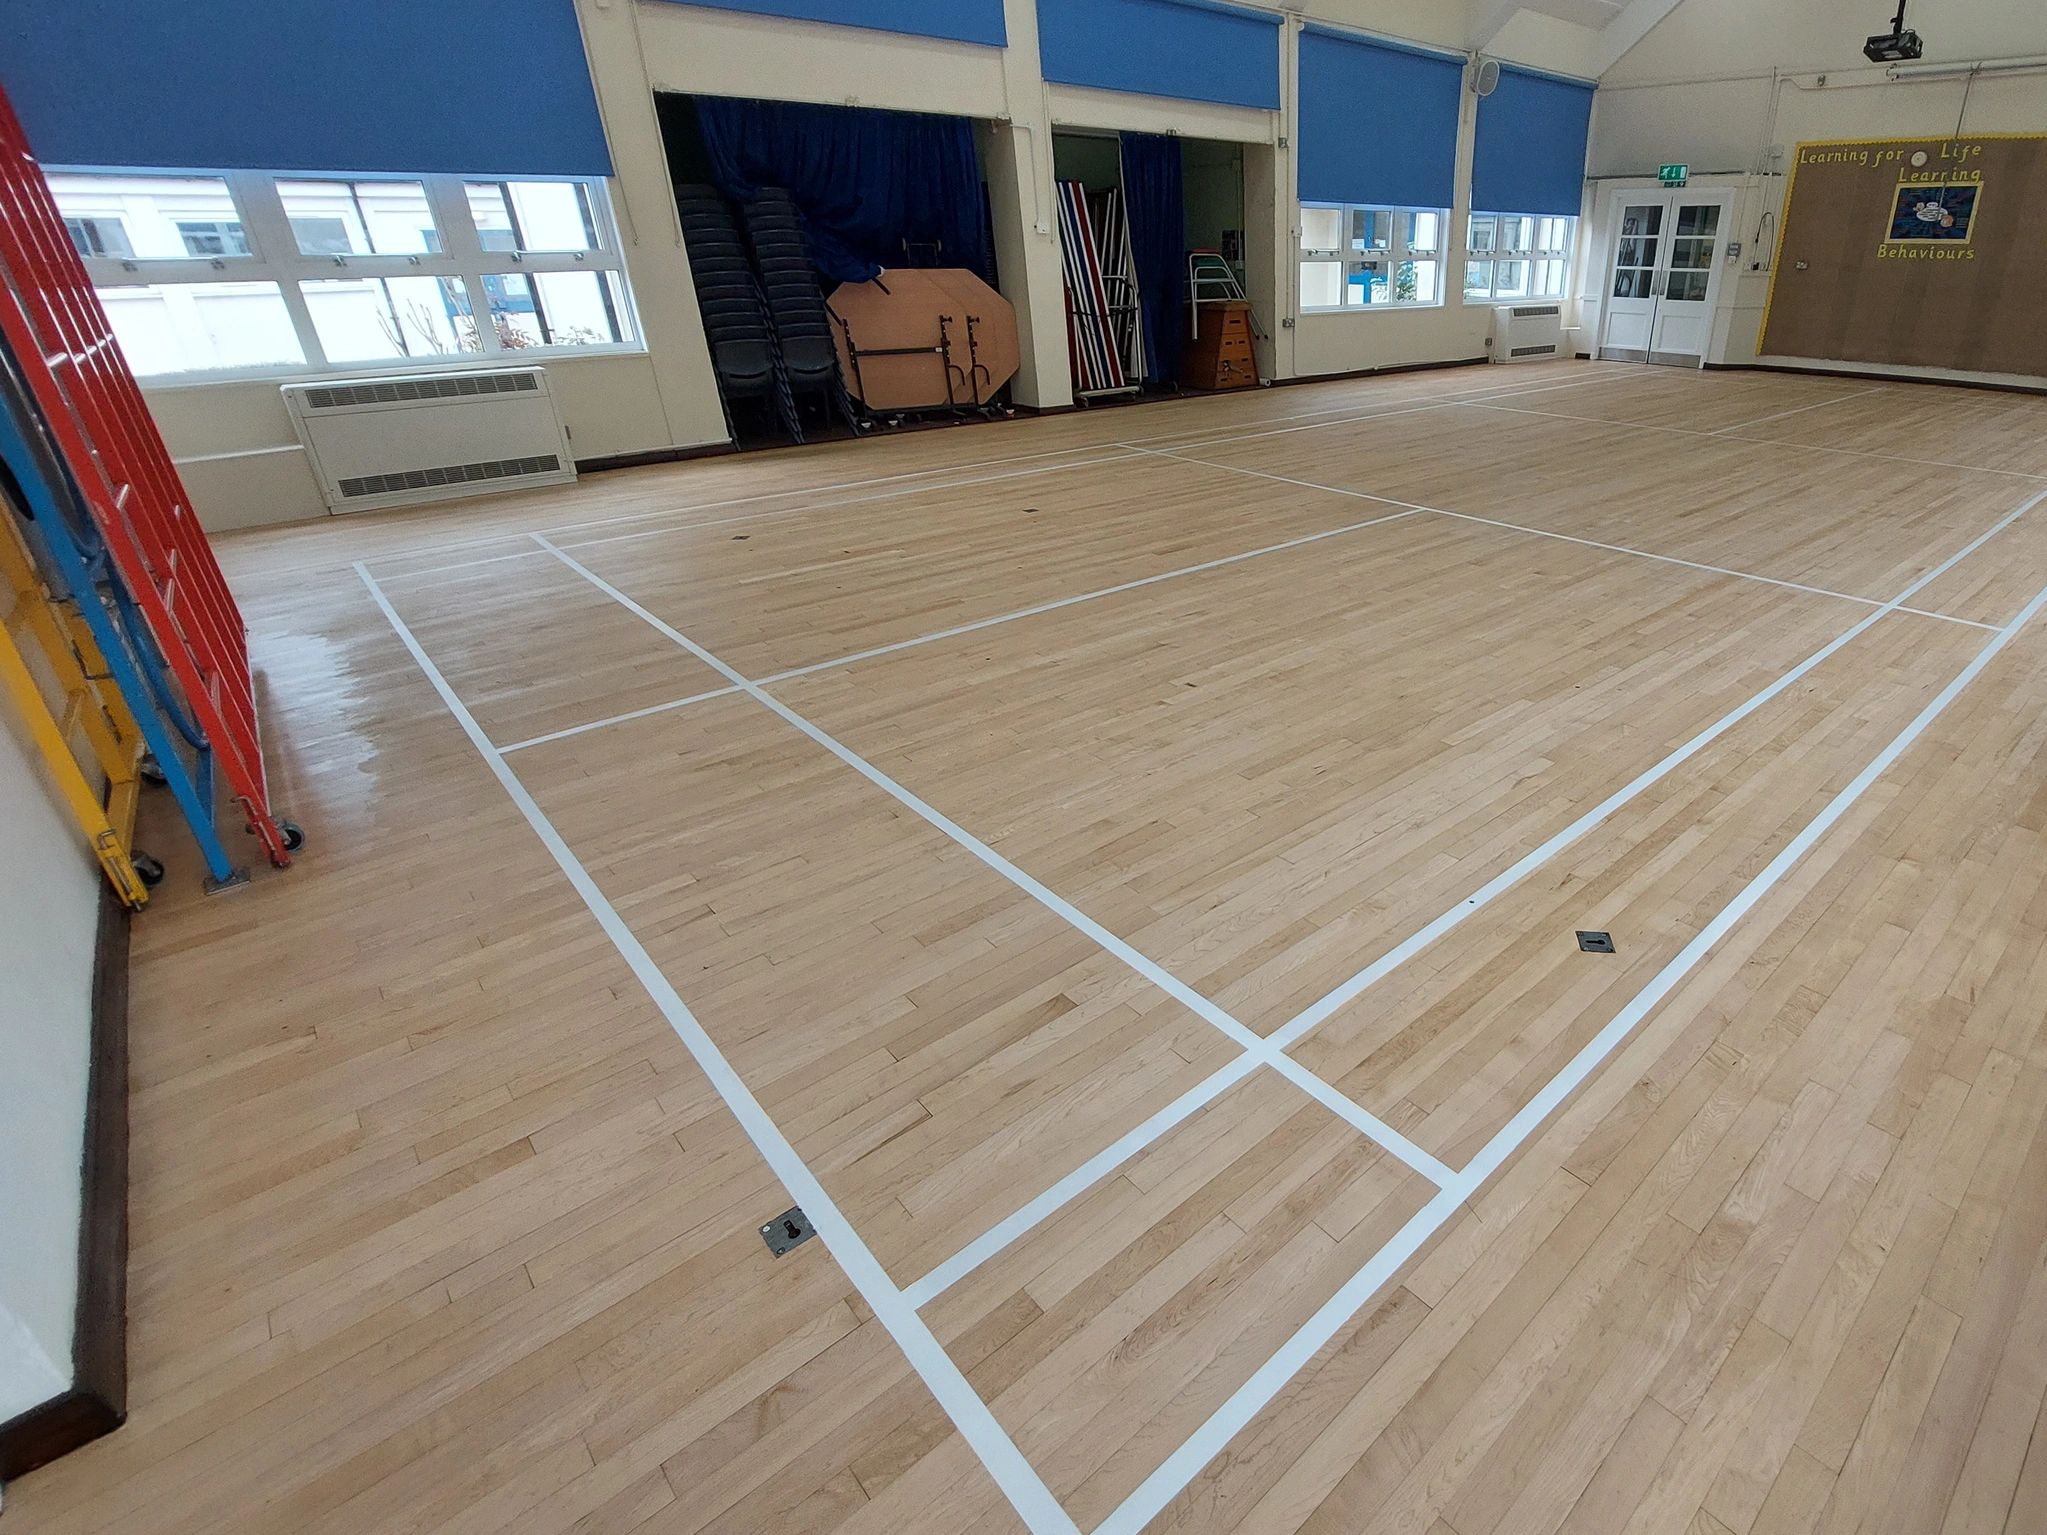 School badminton court